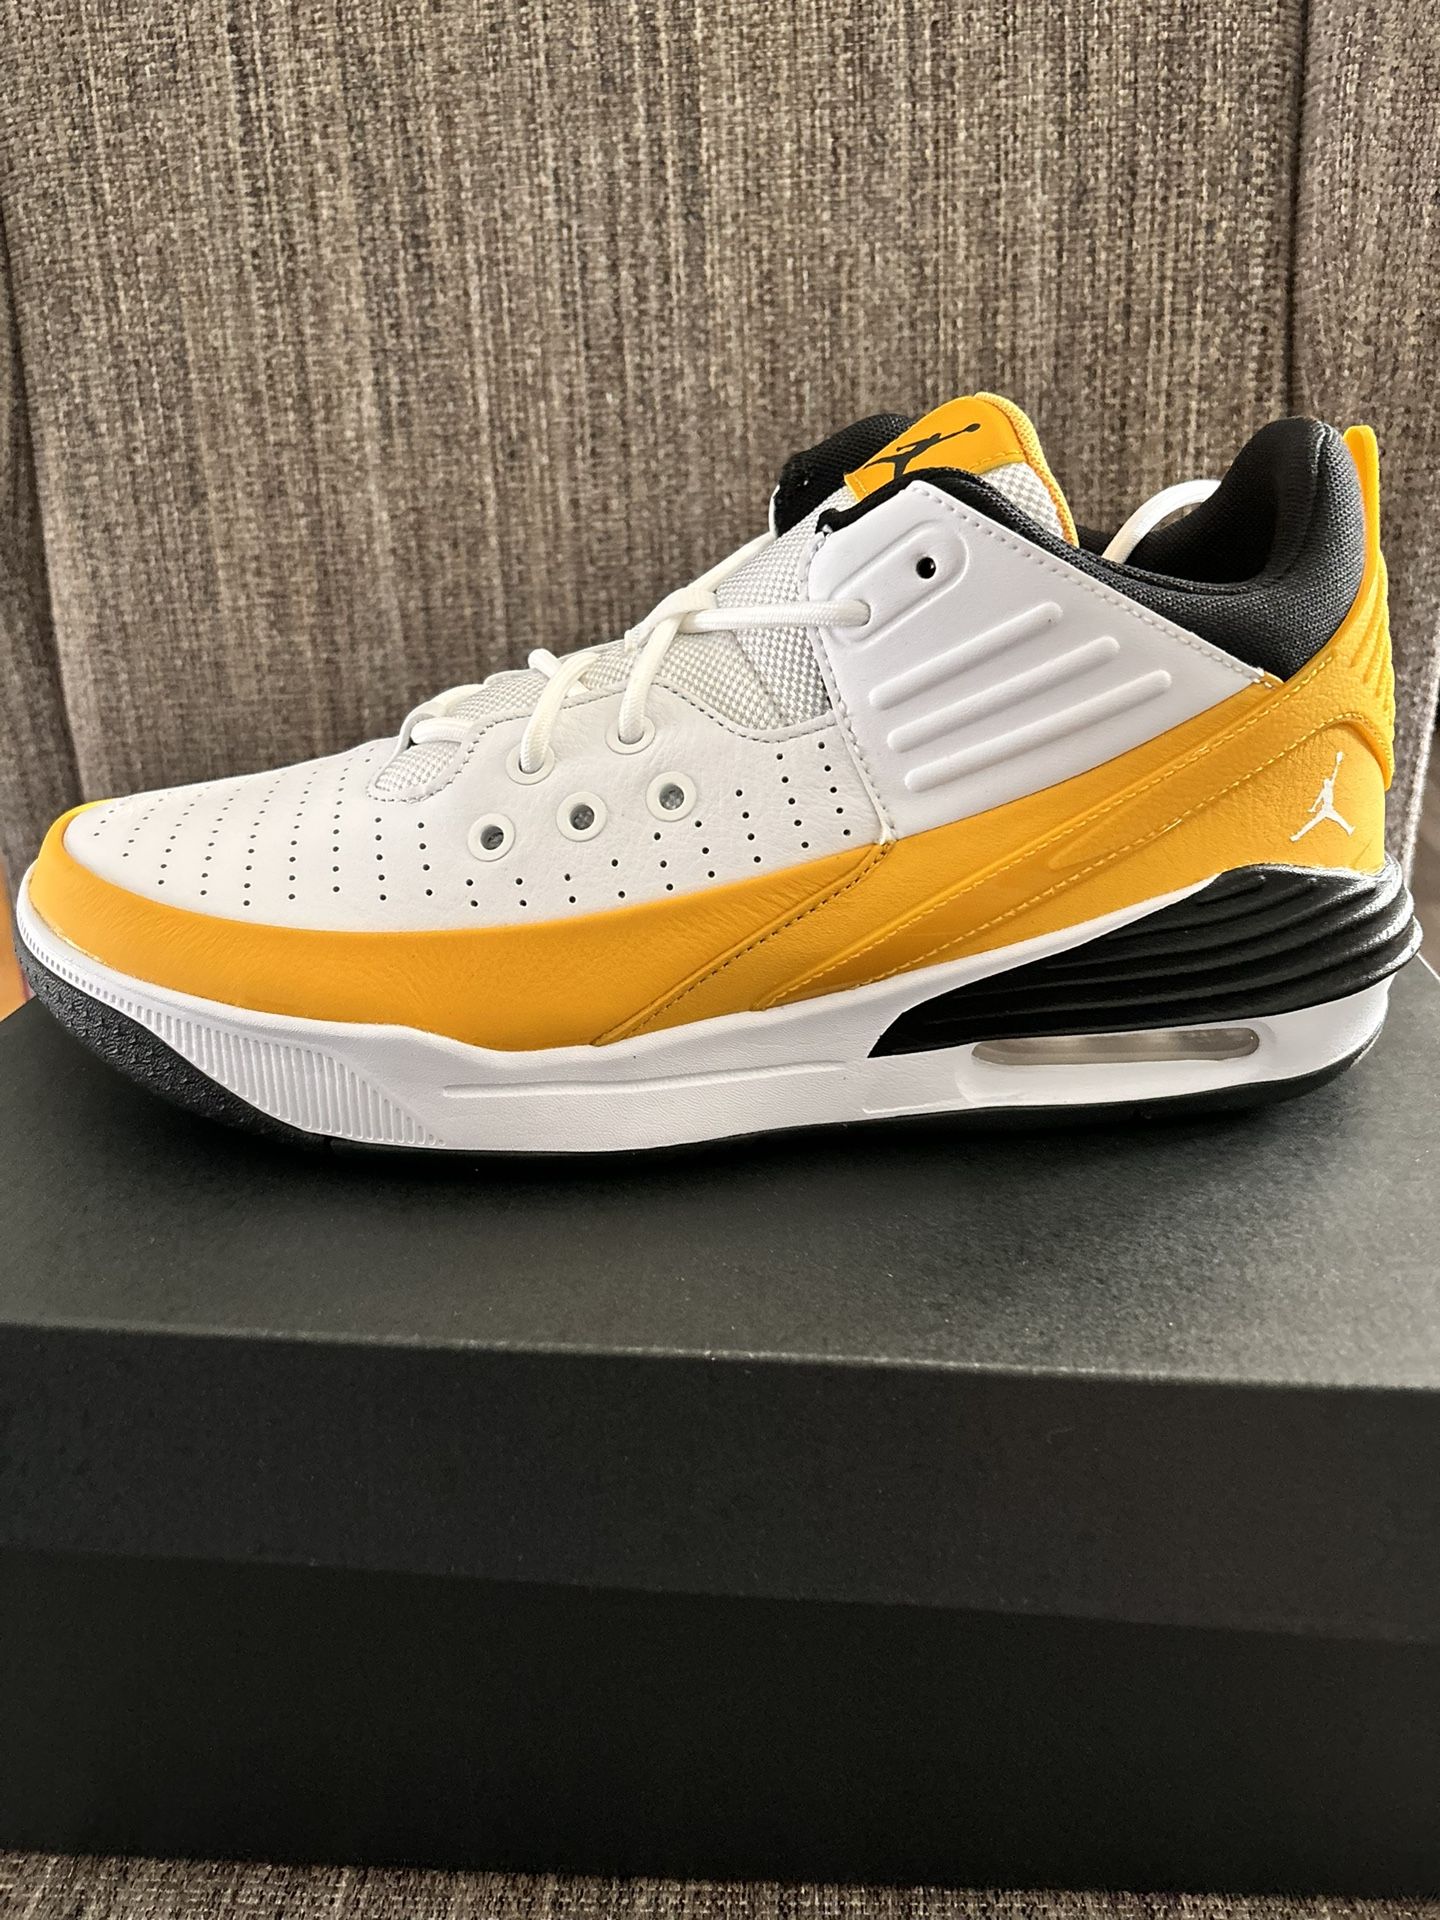 Men Nike Jordan shoes